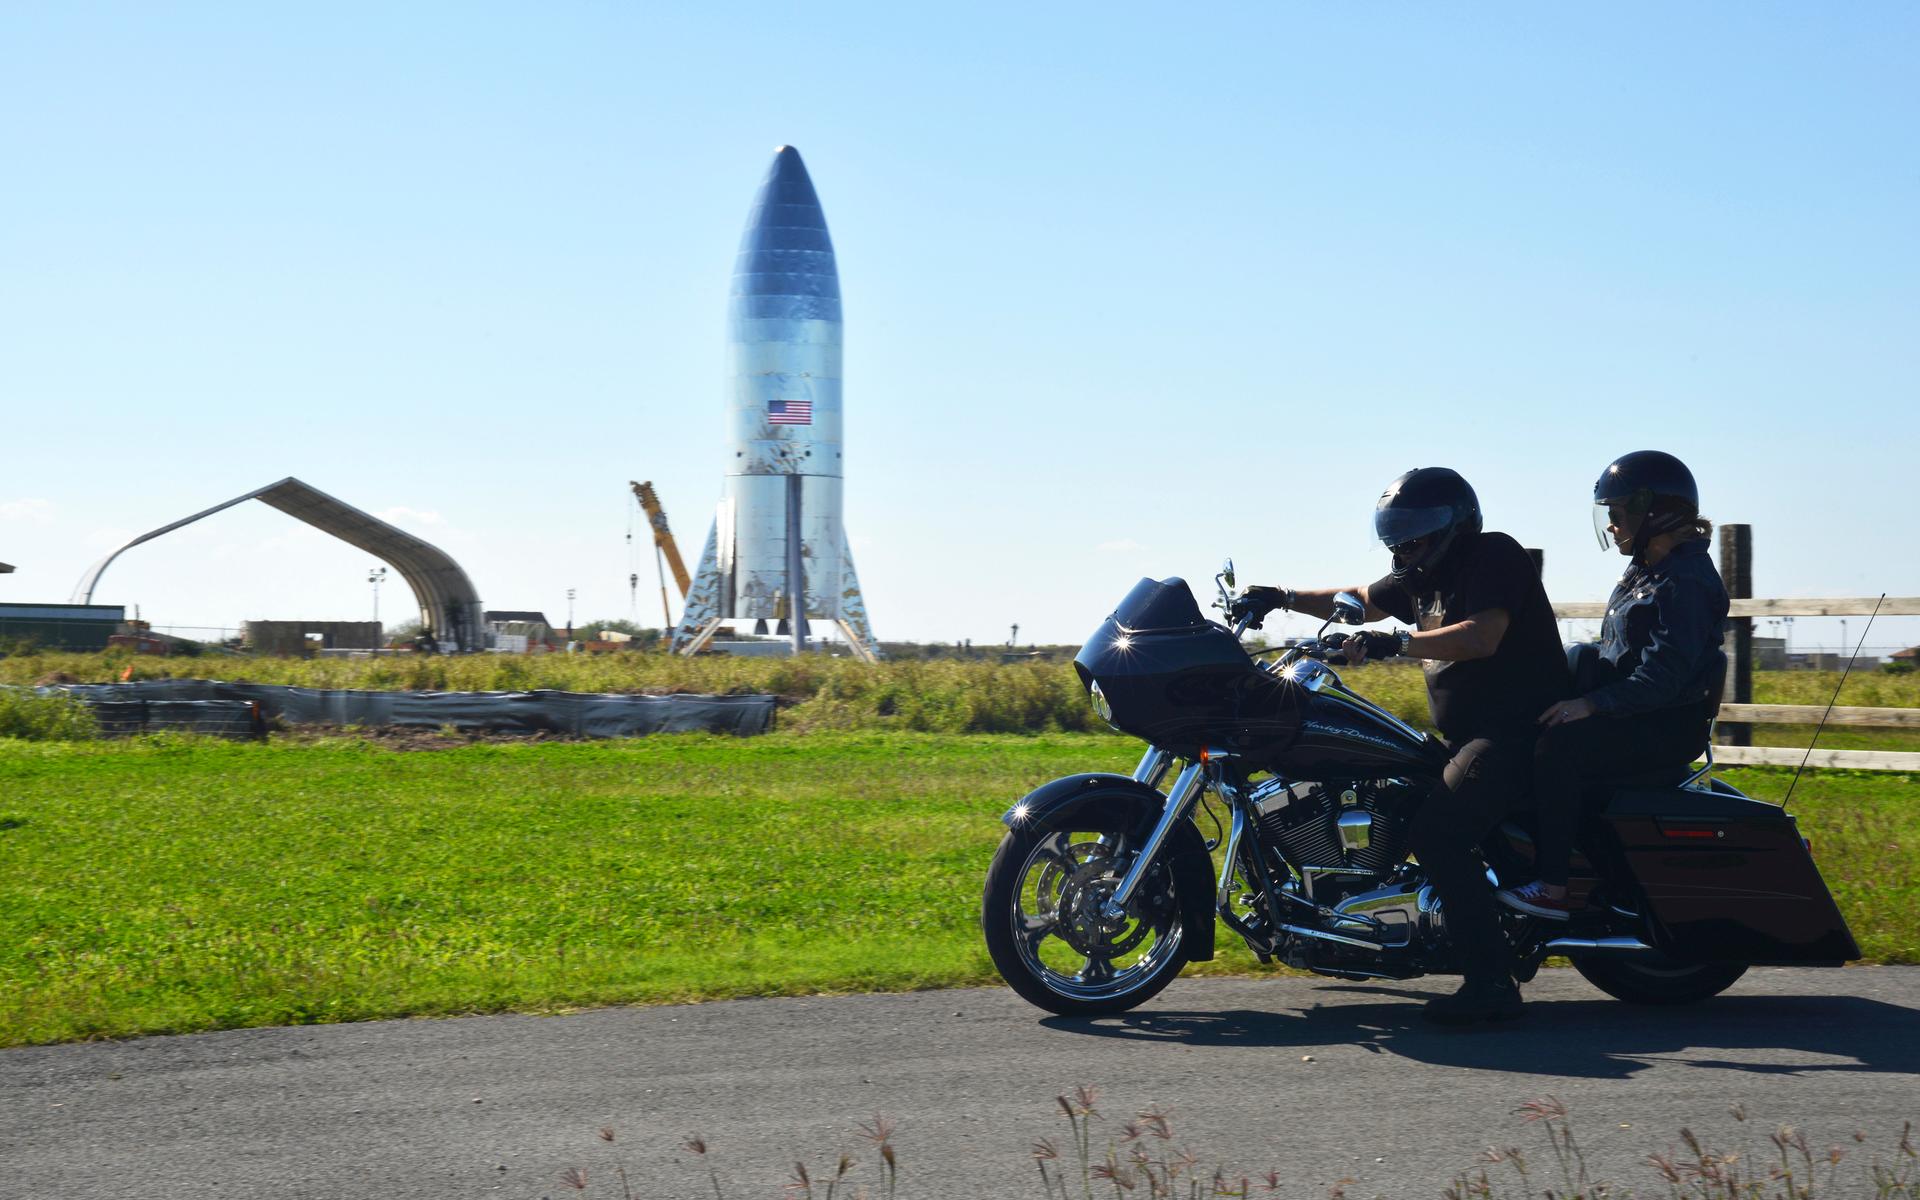 Bild från 2019 på en Harley-förare framför en av Space x-prototyper i Boca Chica i Texas. I närheten bor Elon Musk, enligt honom själv, i ett ”väldigt litet” hus. 